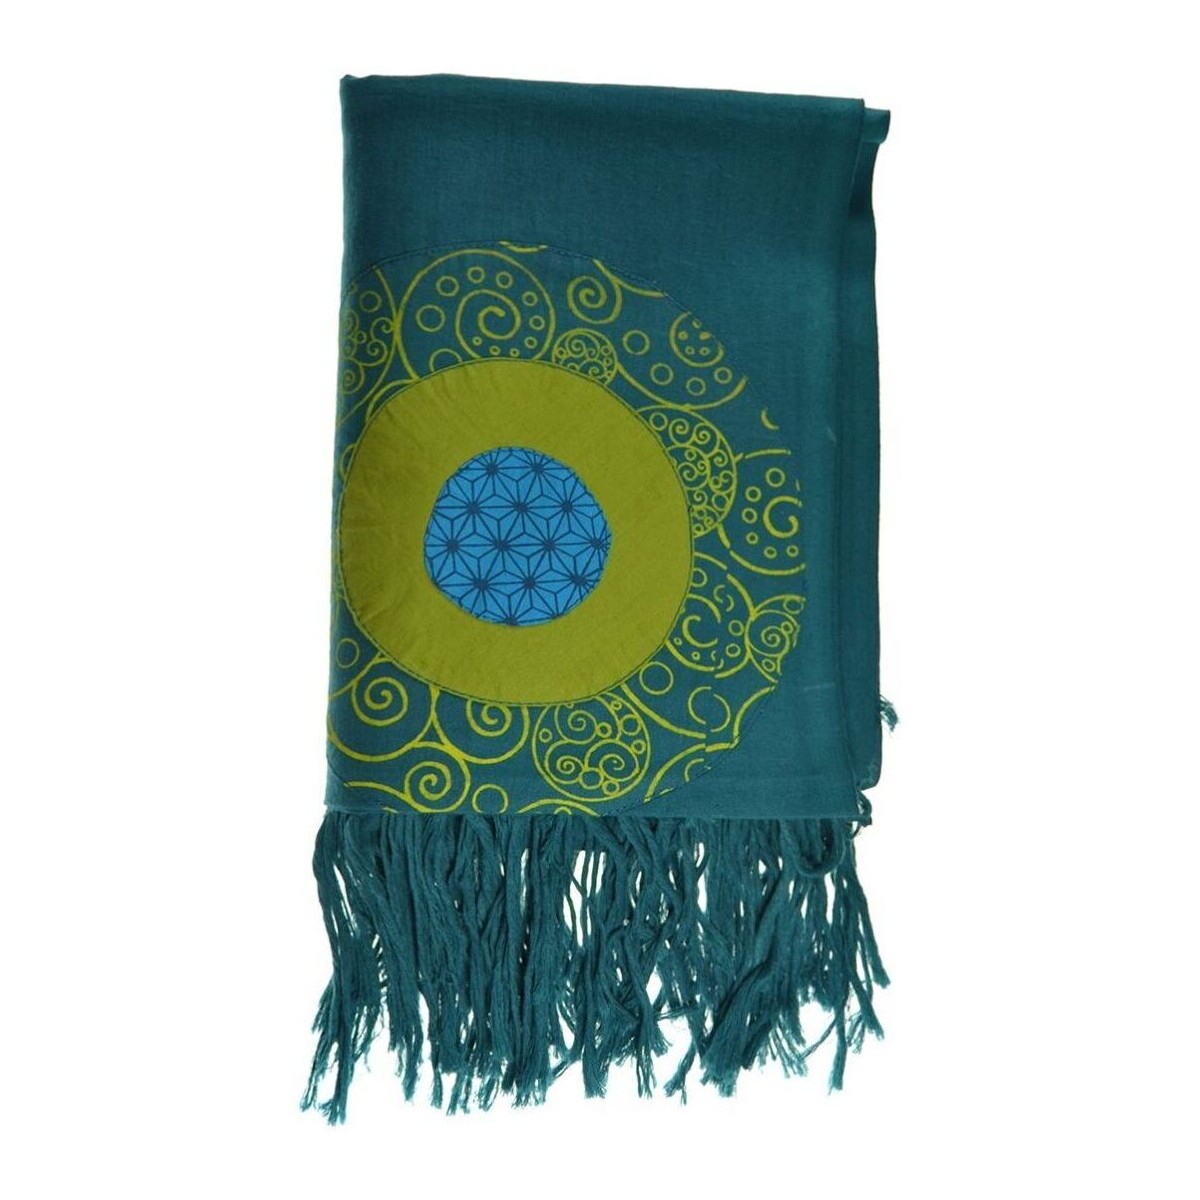 Accessoires textile Echarpes / Etoles / Foulards Fantazia Cheche foulard coton multi patch ethnic print bleu vert Bleu